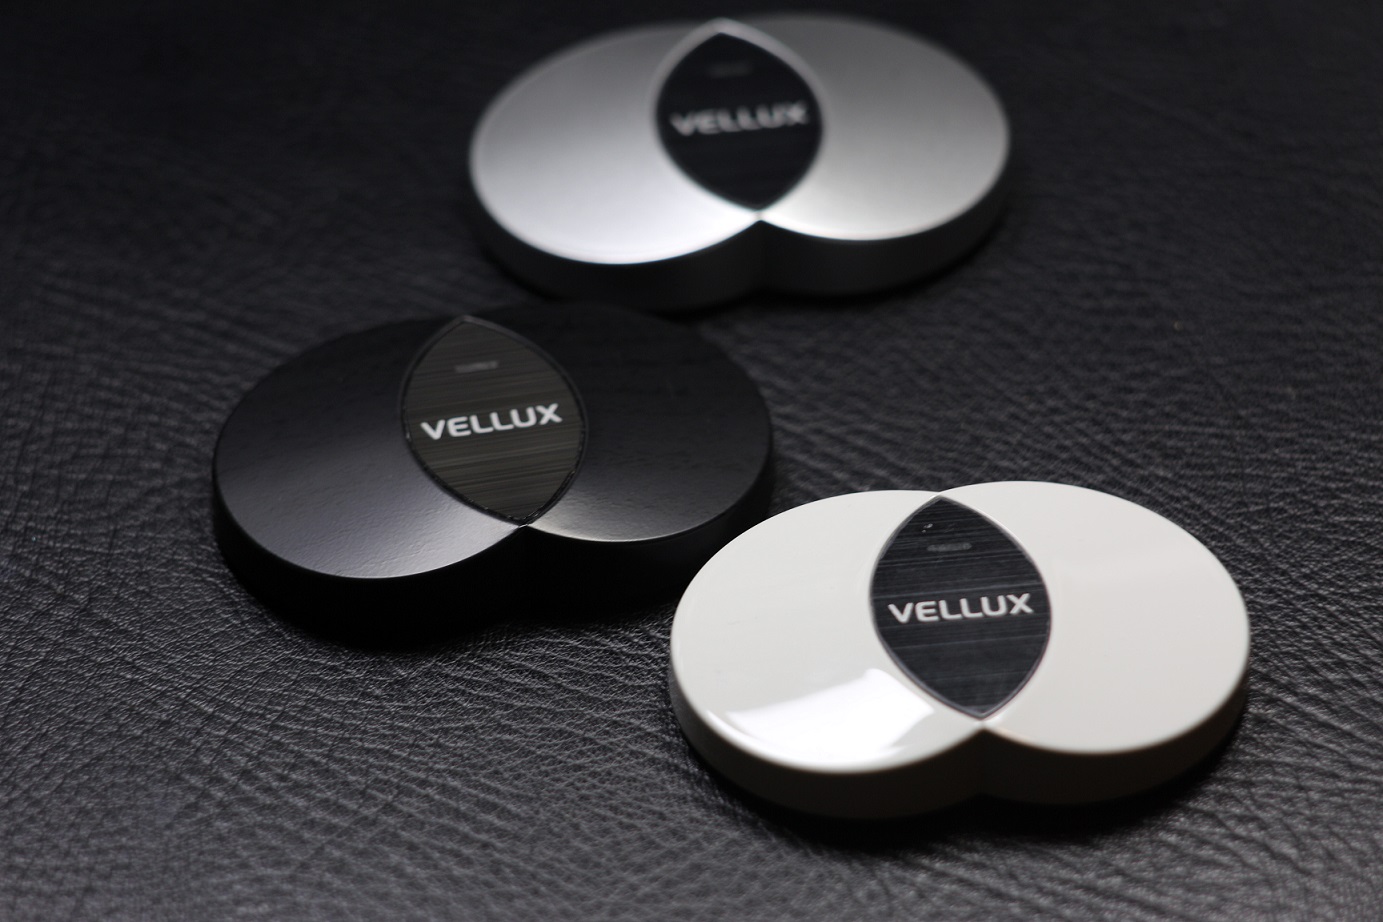 Combo 5 nút bấm và 1 màn hình hiển thị chuông báo gọi phục vụ VELLUX